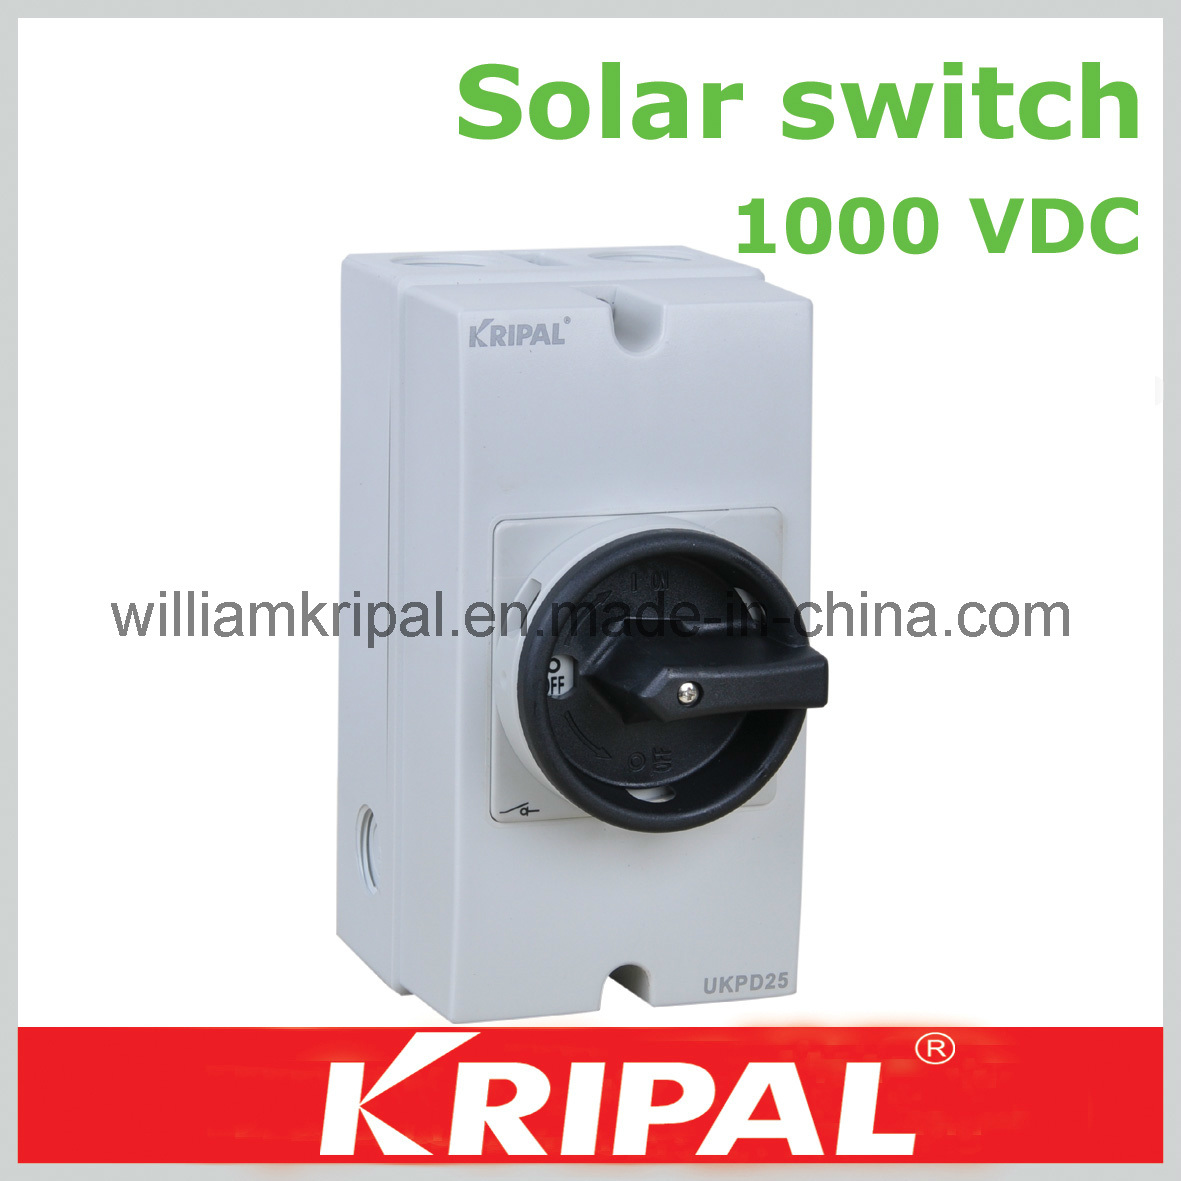 1000VDC DC Solar Isolator Switch